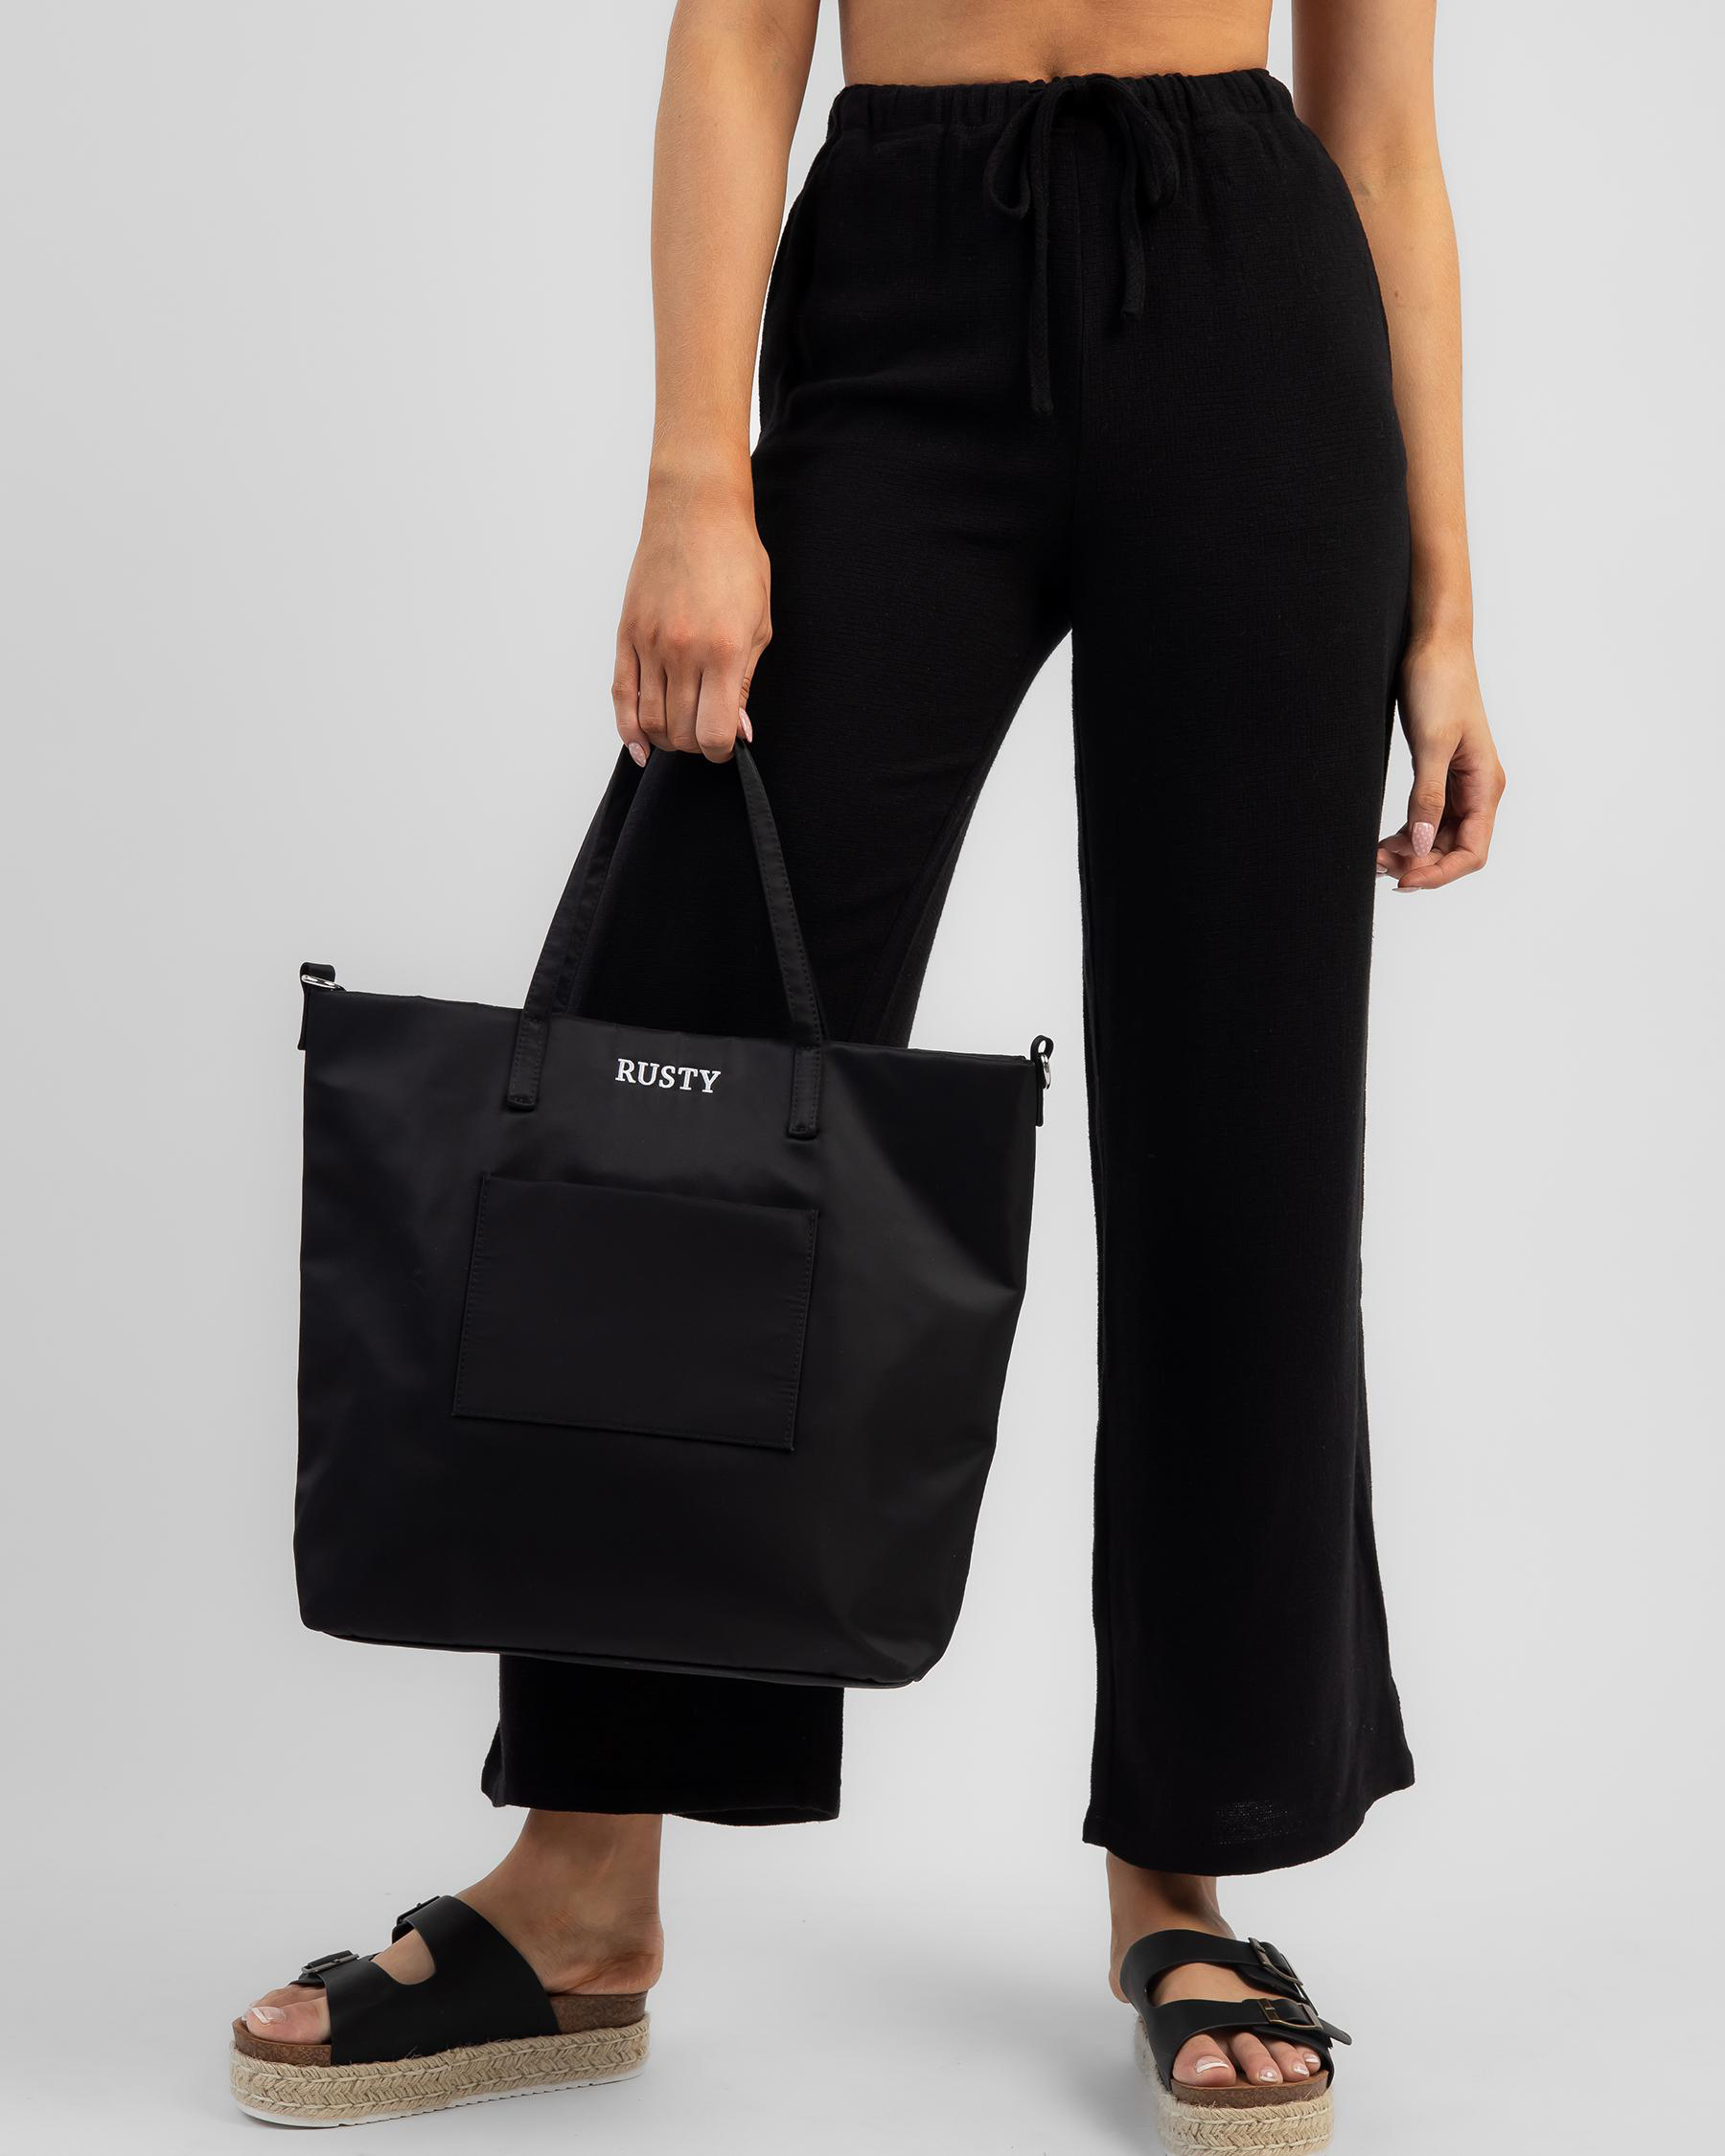 XL black nylon shopper bag